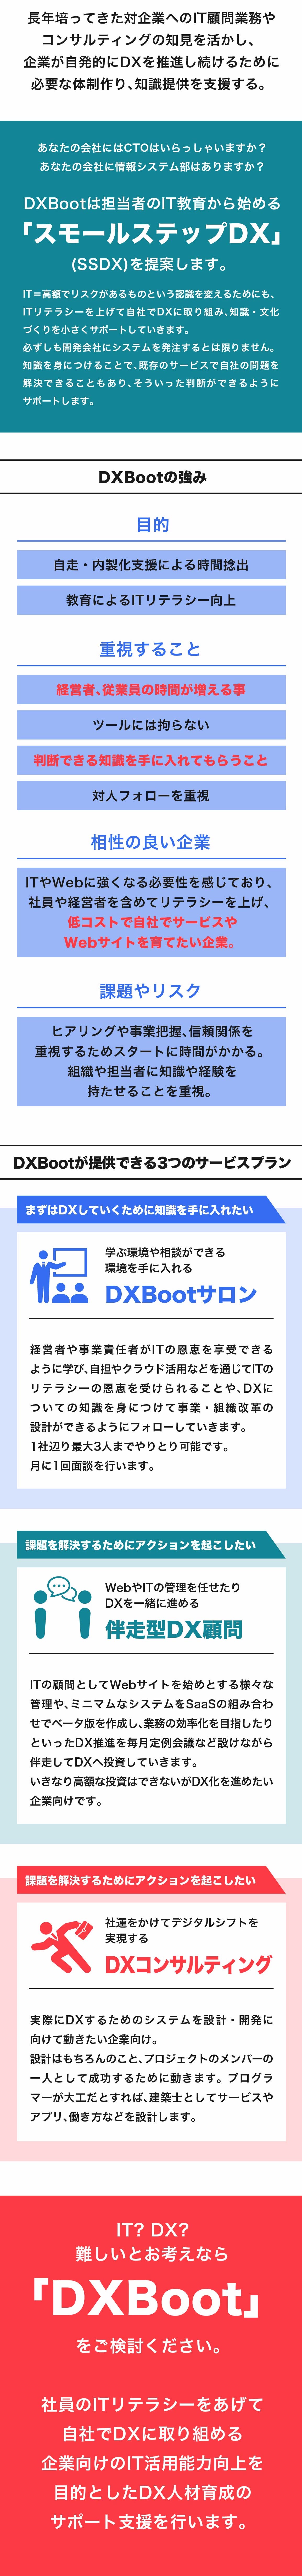 DXBoot